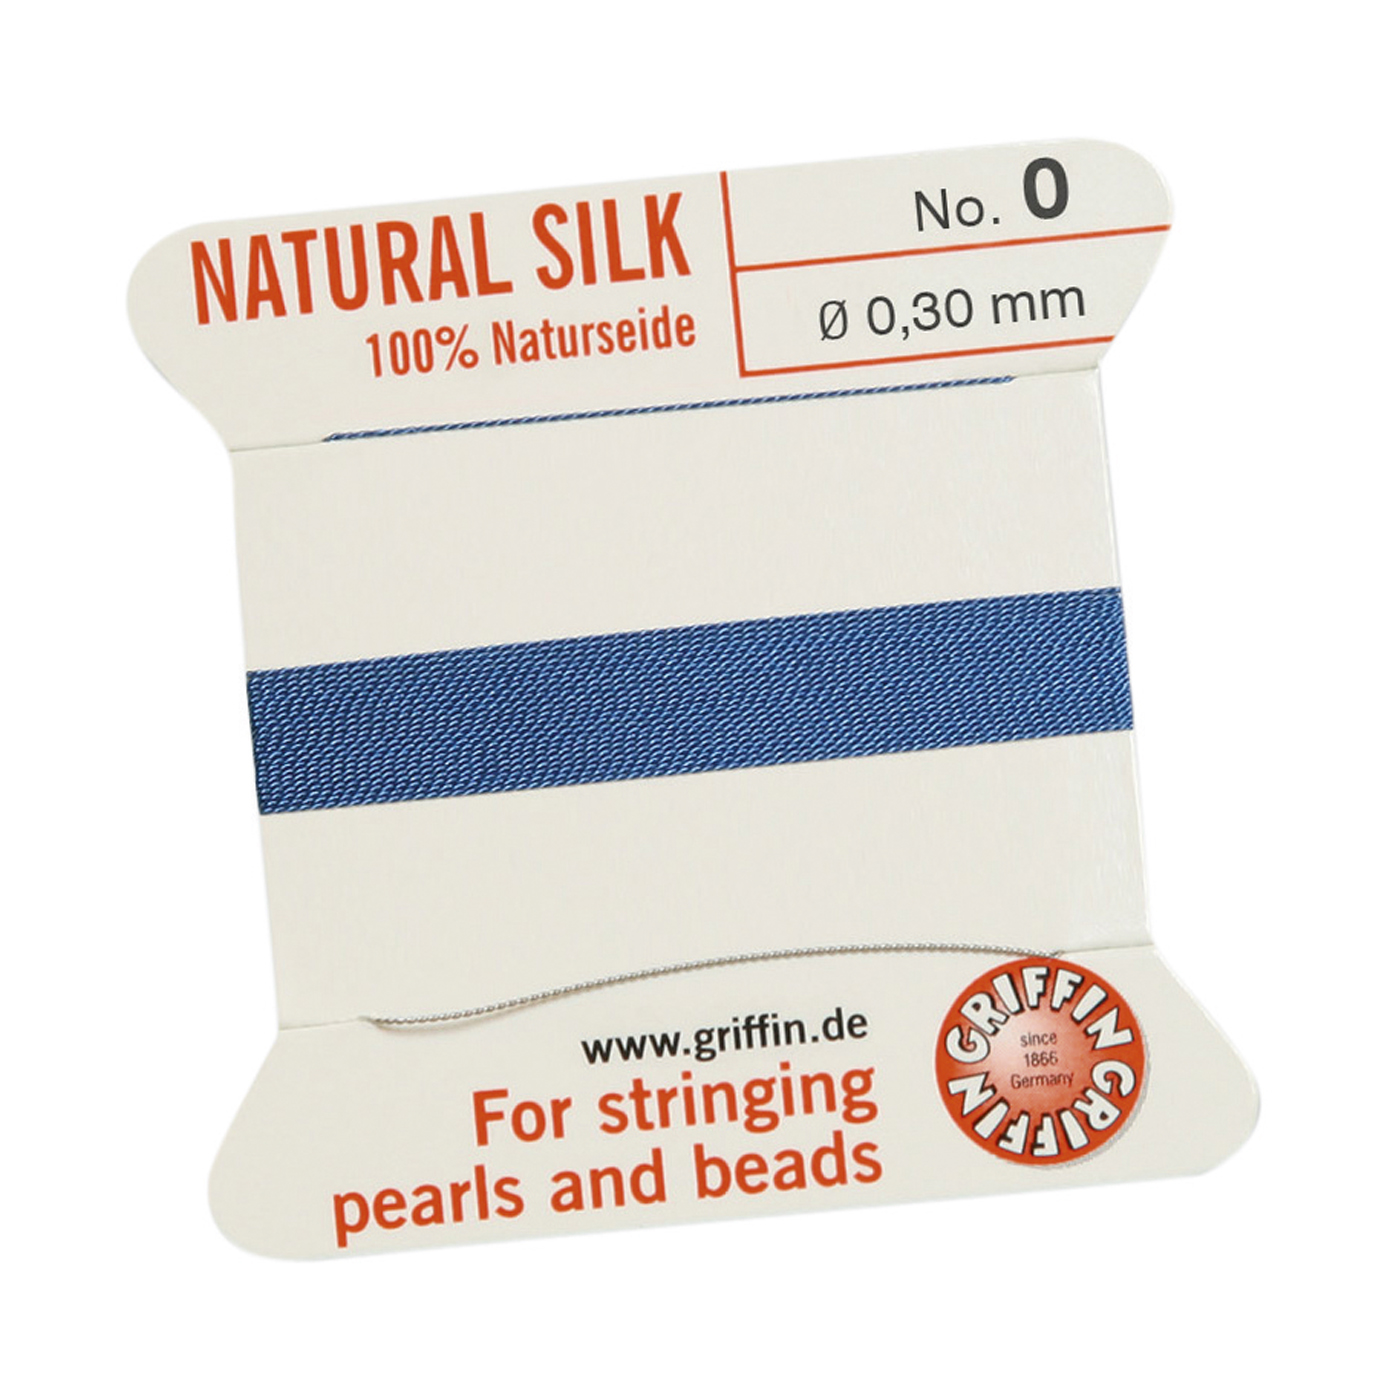 Bead Cord 100% Natural Silk, Blue, No. 0 - 2 m